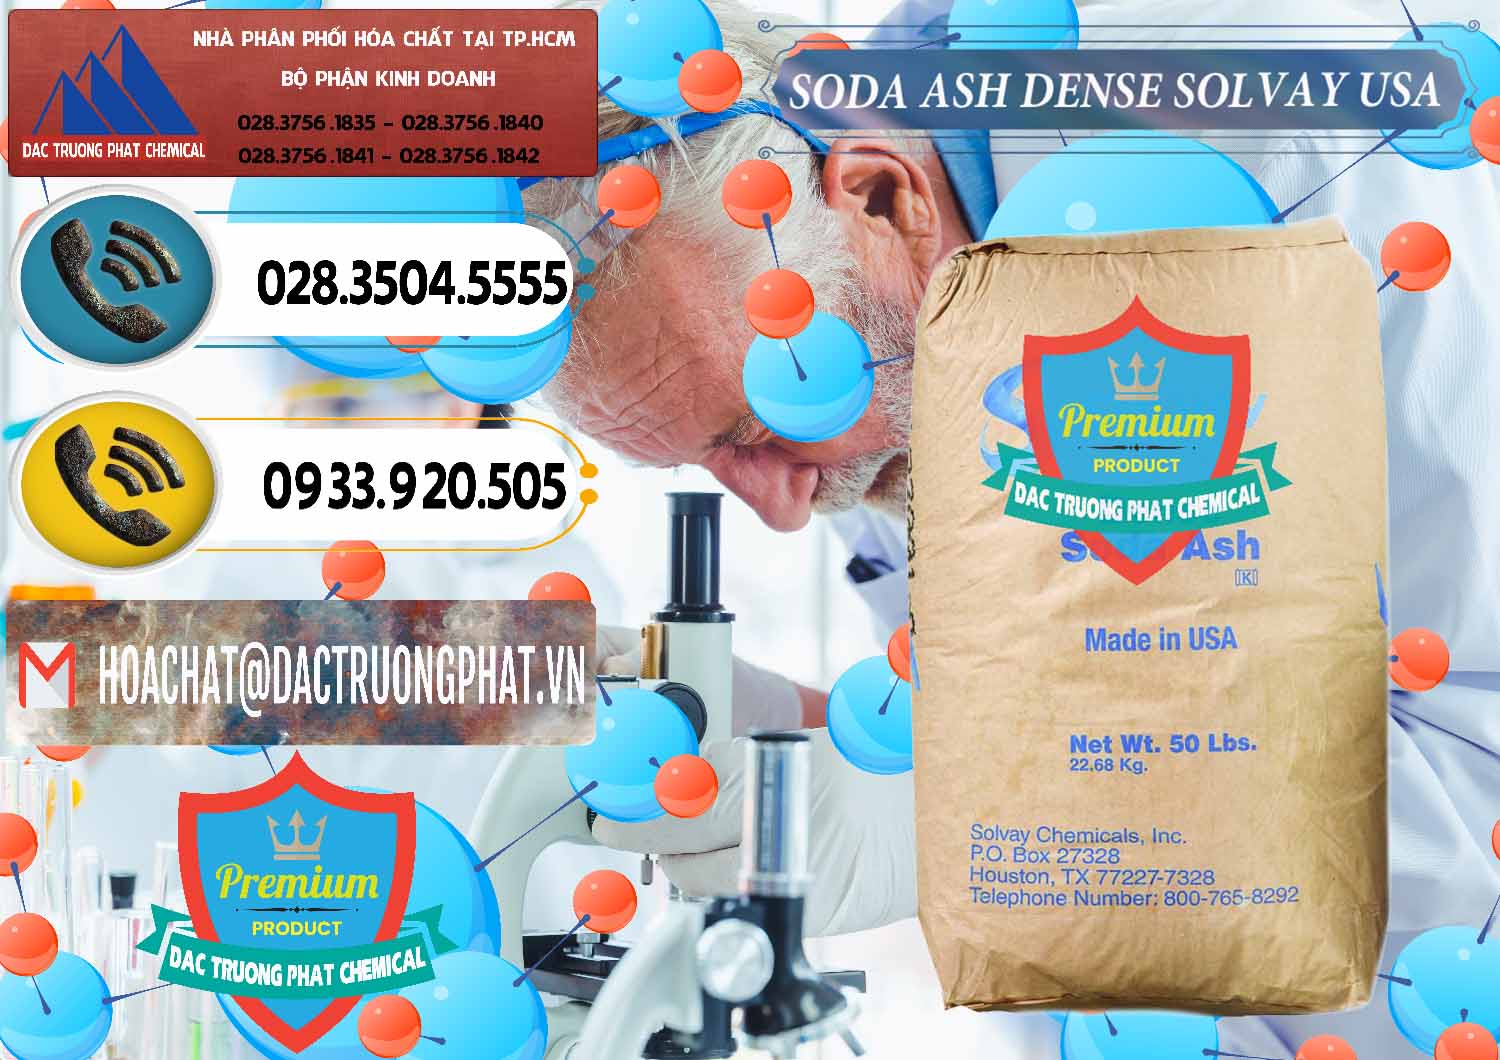 Đơn vị chuyên bán và phân phối Soda Ash Dense - NA2CO3 Solvay Mỹ USA - 0337 - Cty chuyên bán & cung cấp hóa chất tại TP.HCM - hoachatdetnhuom.vn